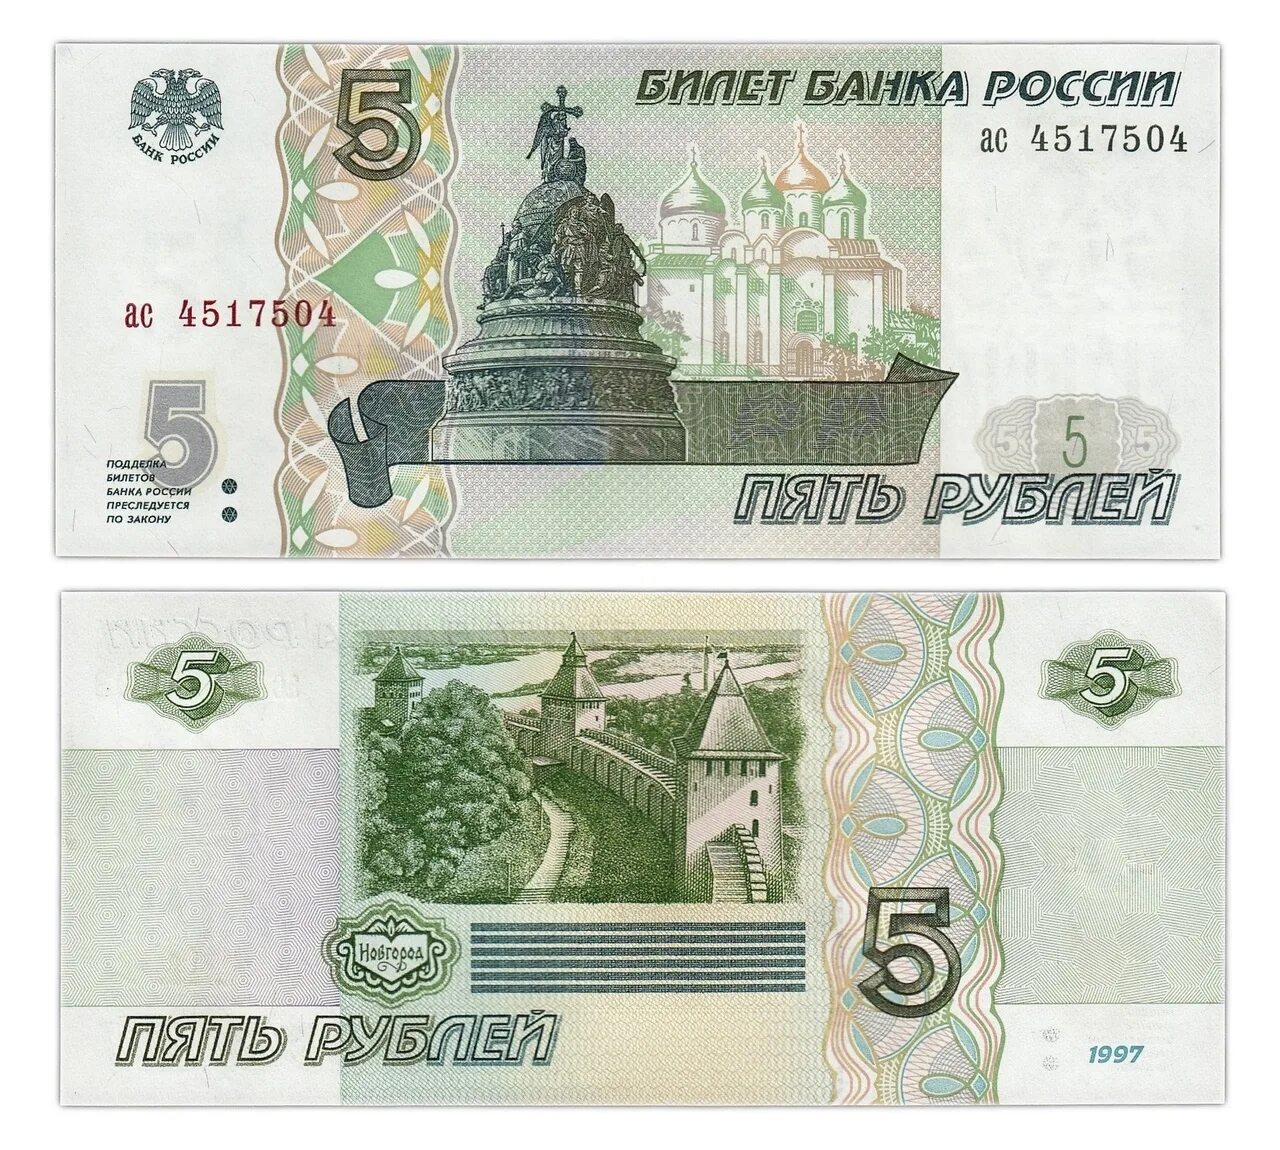 Что изображено на 5 рублях. Банкнота 5 рублей. Изображение денежных купюр. Образцы денежных купюр. Банкнота 5 рублей образца 1997 года.